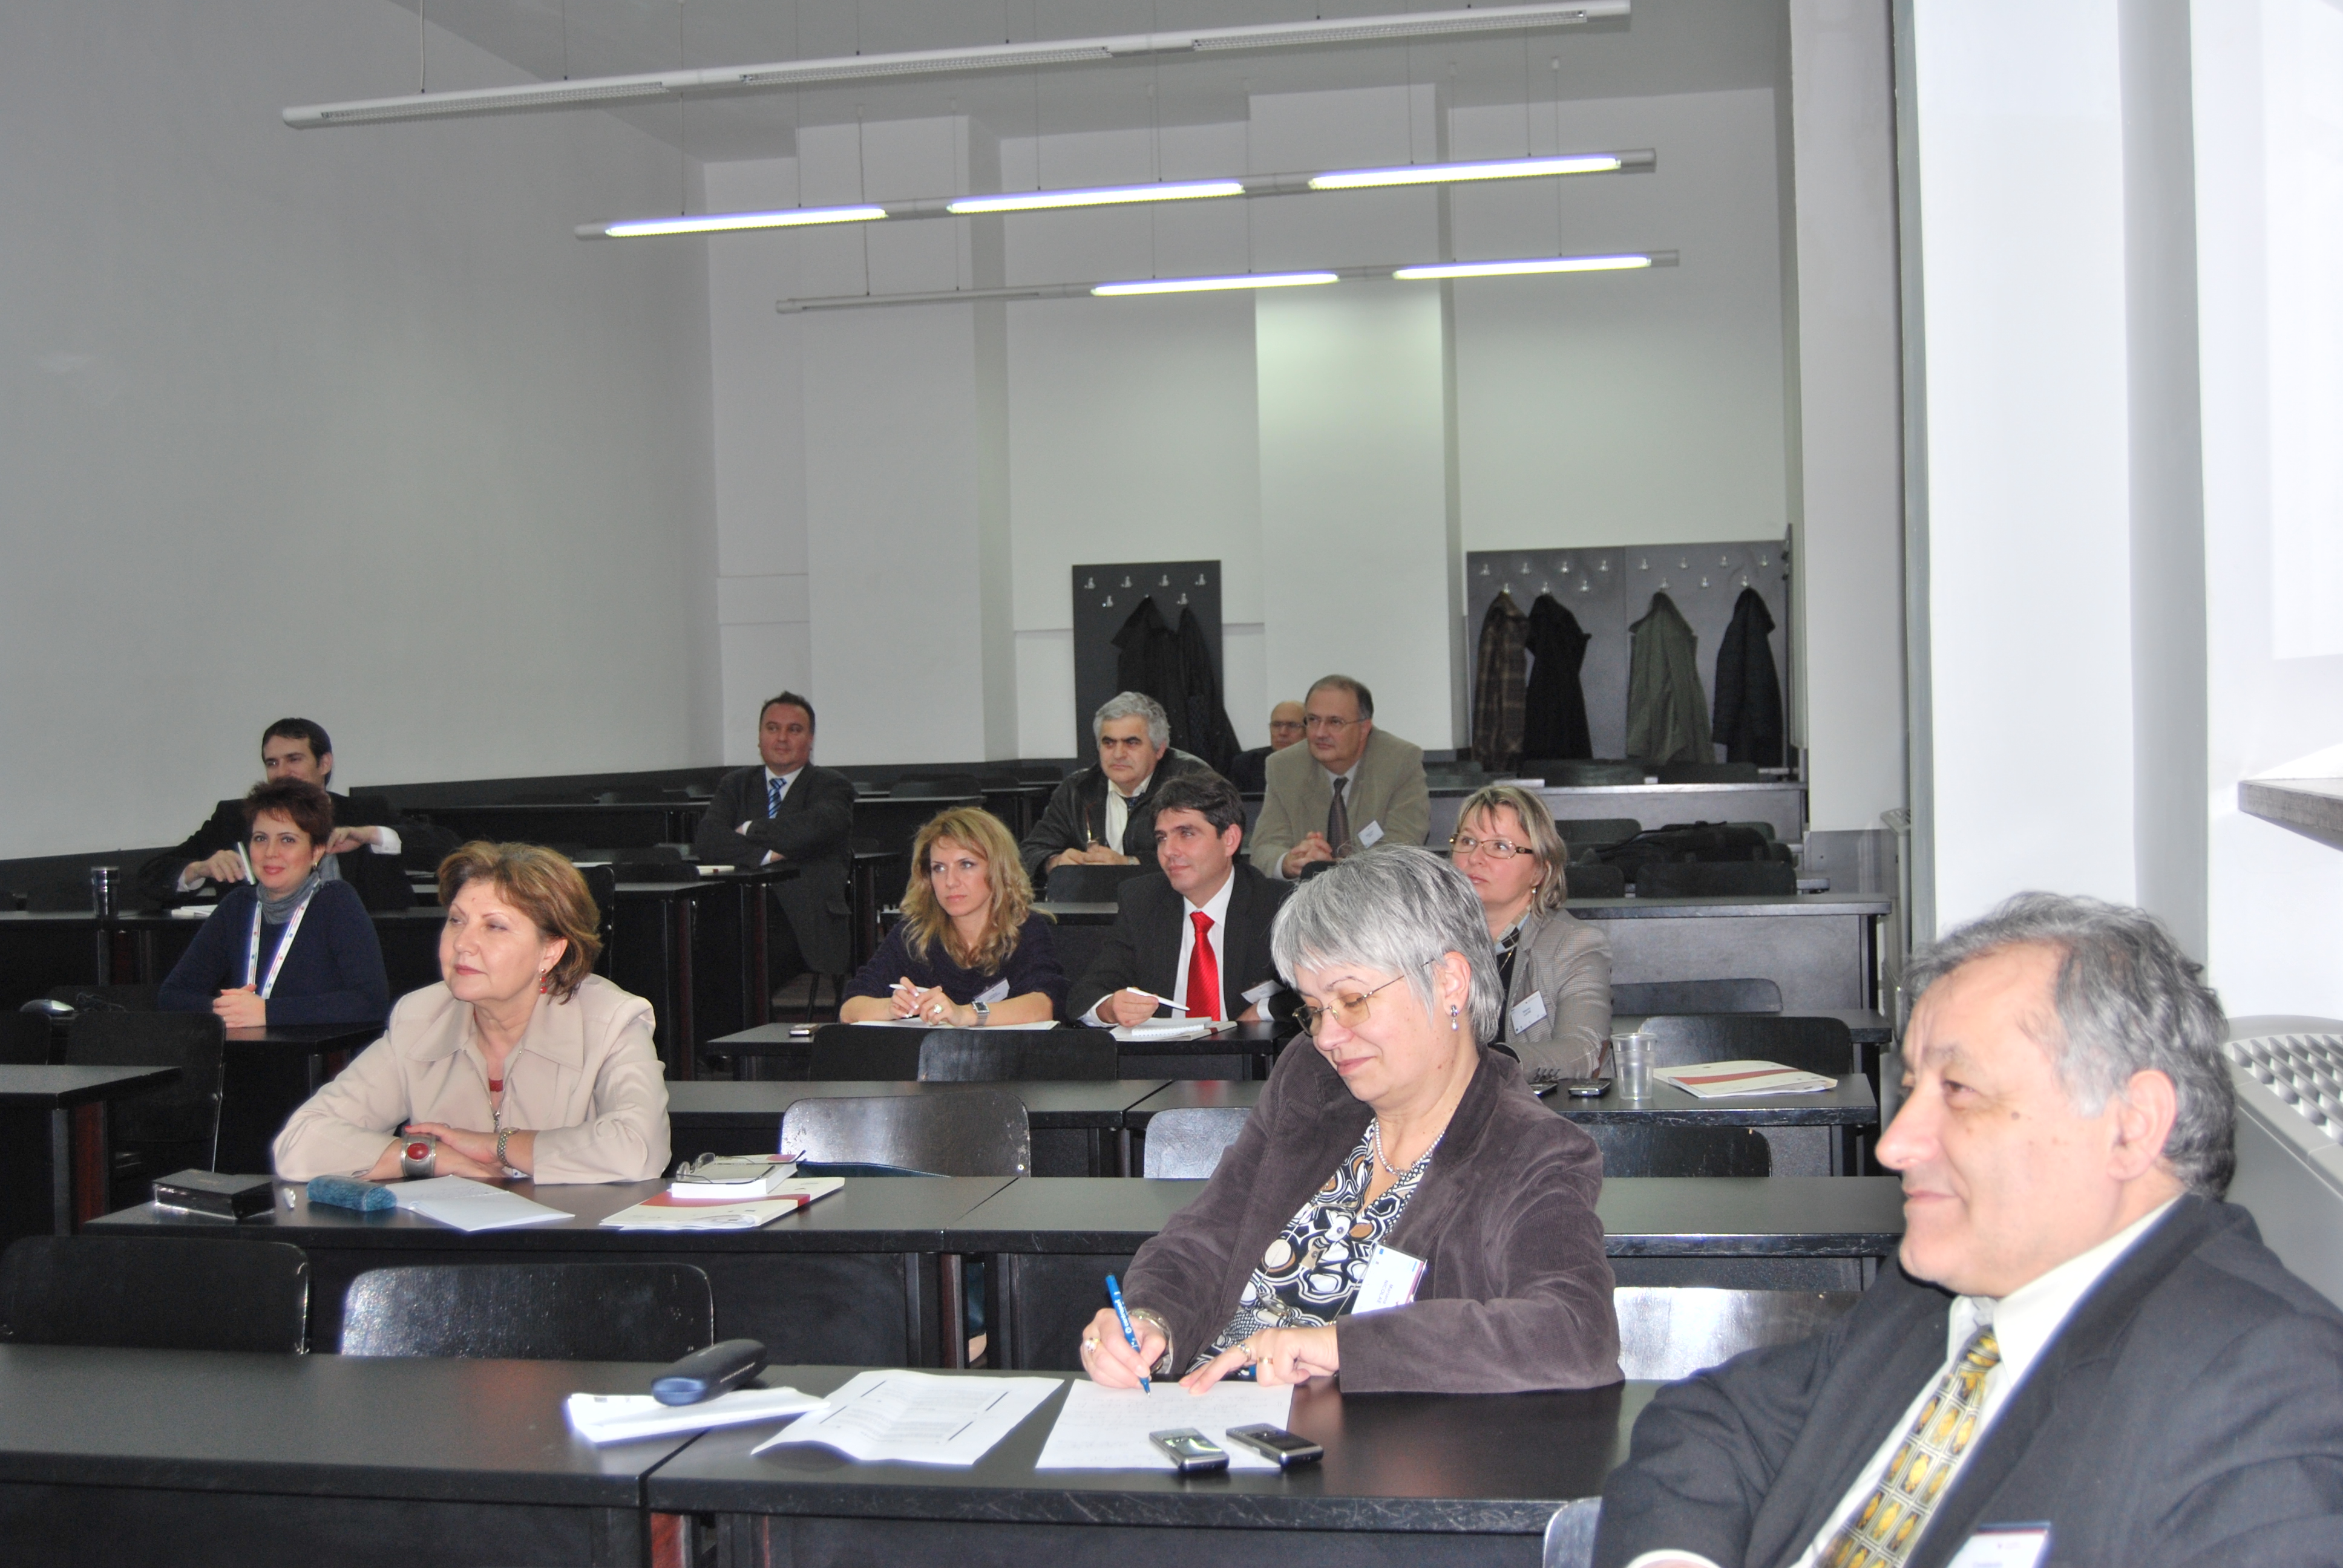 Sesiunea de formare a modulului Institutiile de invatamant superior ca organizatii - managementul strategic, Bucuresti